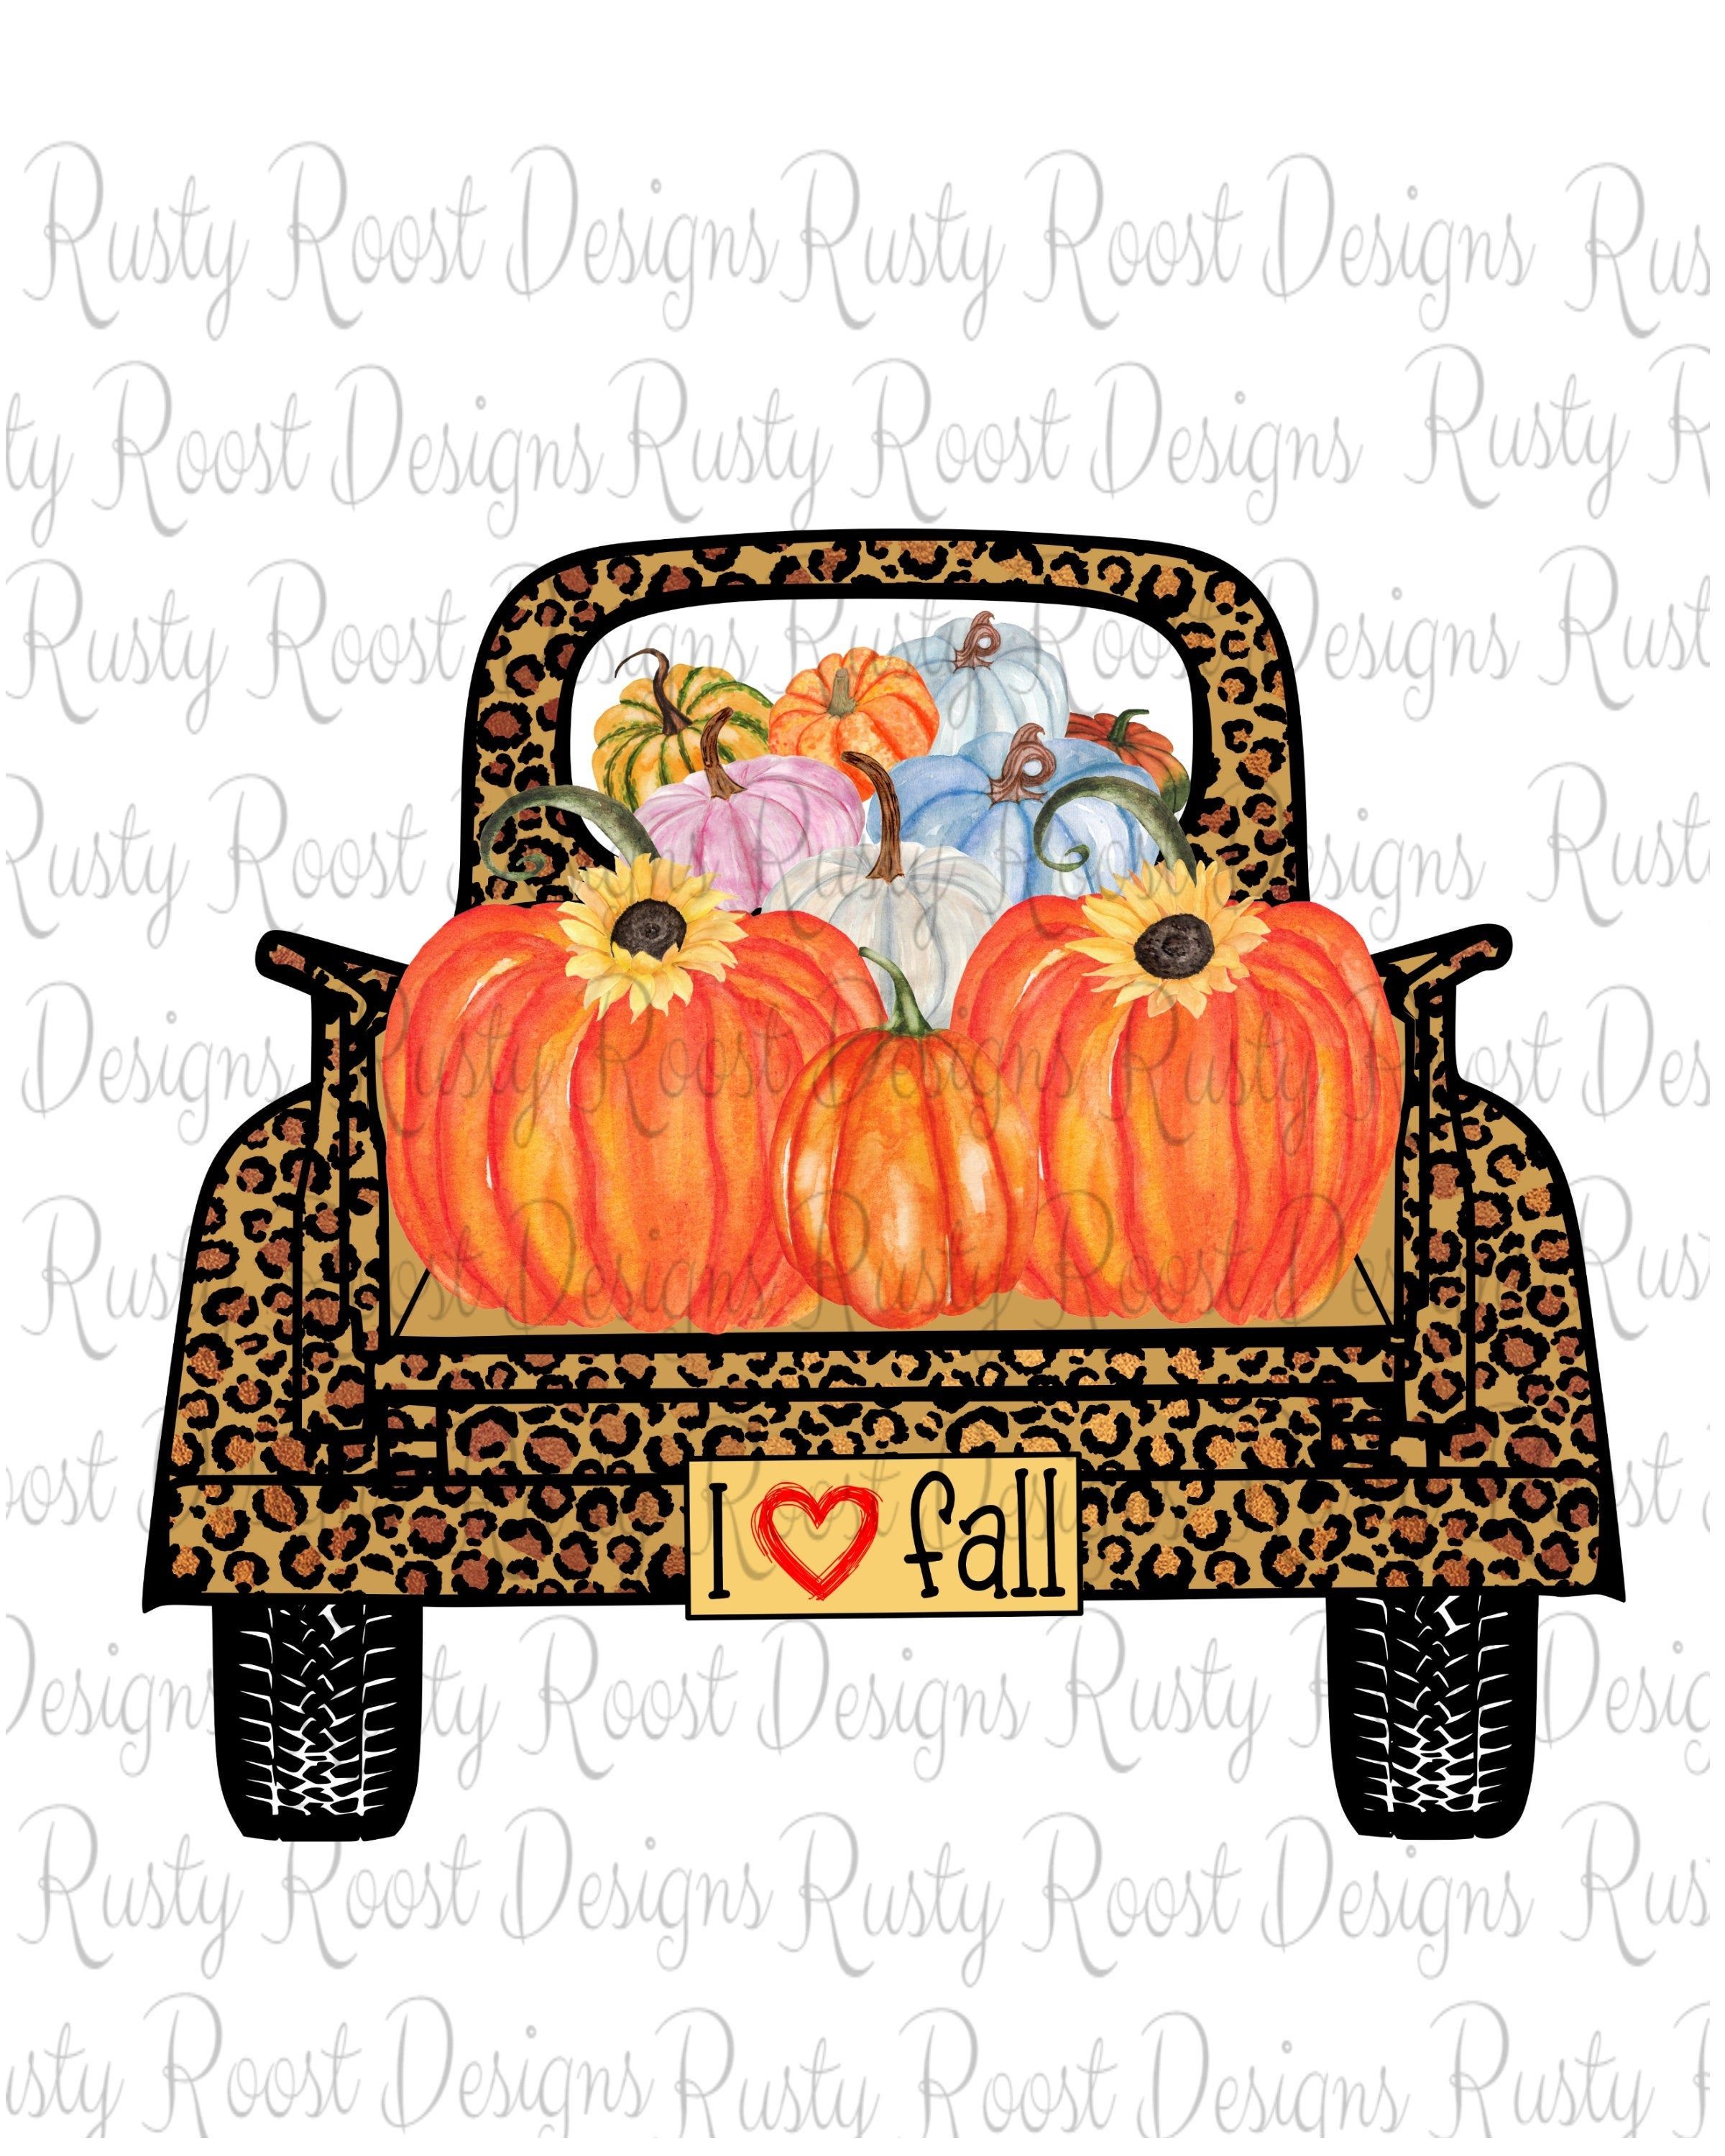 I love fall pngleopard truckfall sublimation designs. Etsy. Fall image, Truck design, Image design